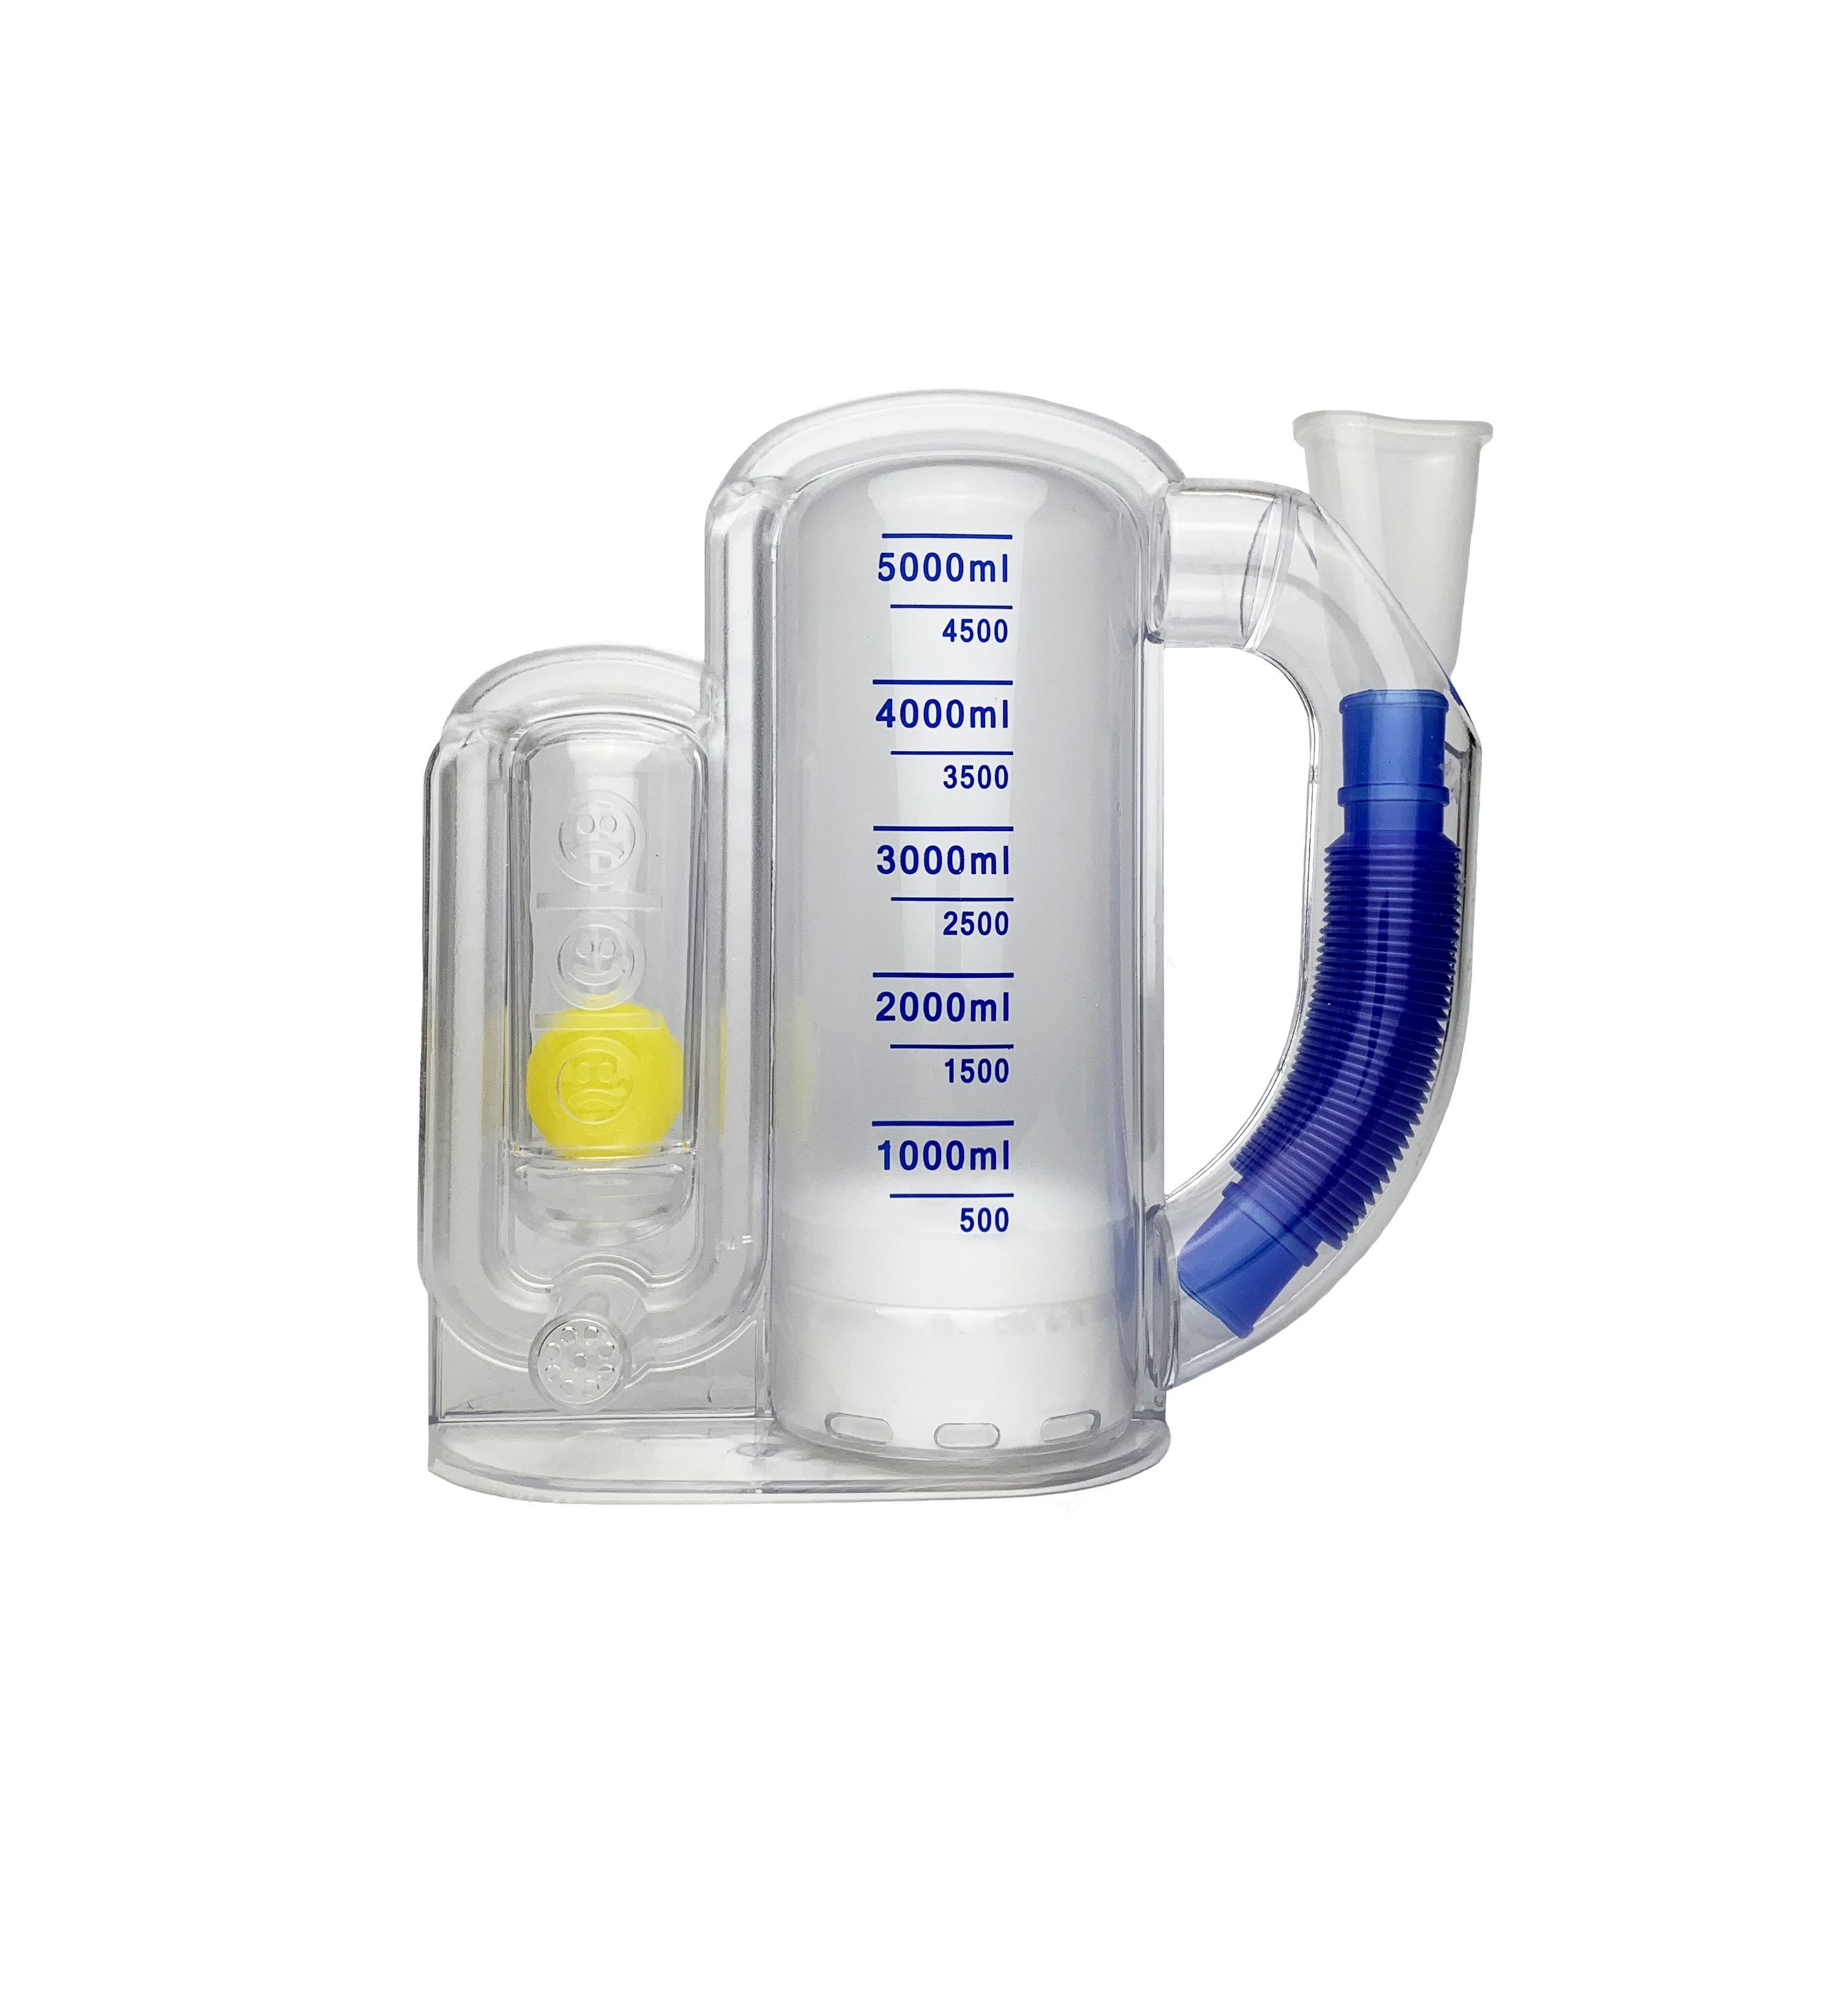 呼吸训练器_呼吸训练器使用说明相关-成都新澳冠医疗器械公司